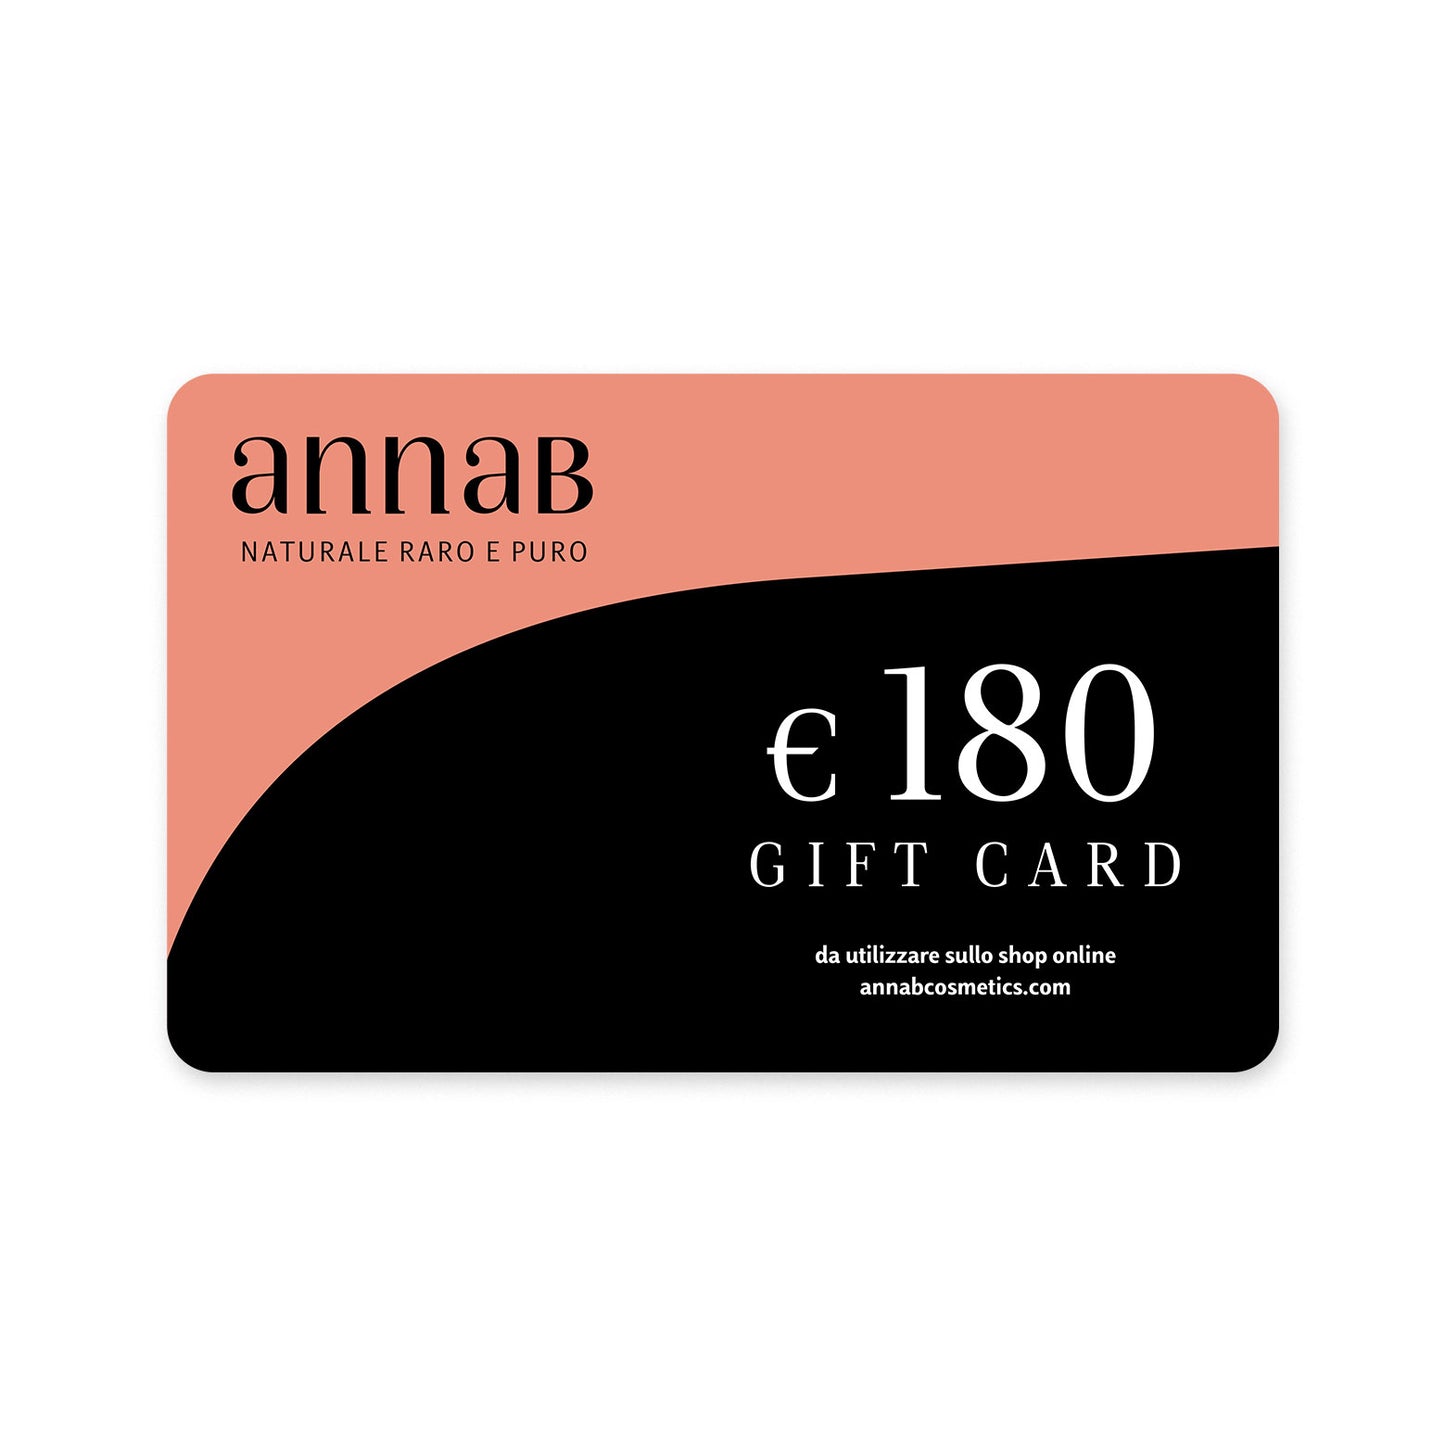 AnnaB Gift Card